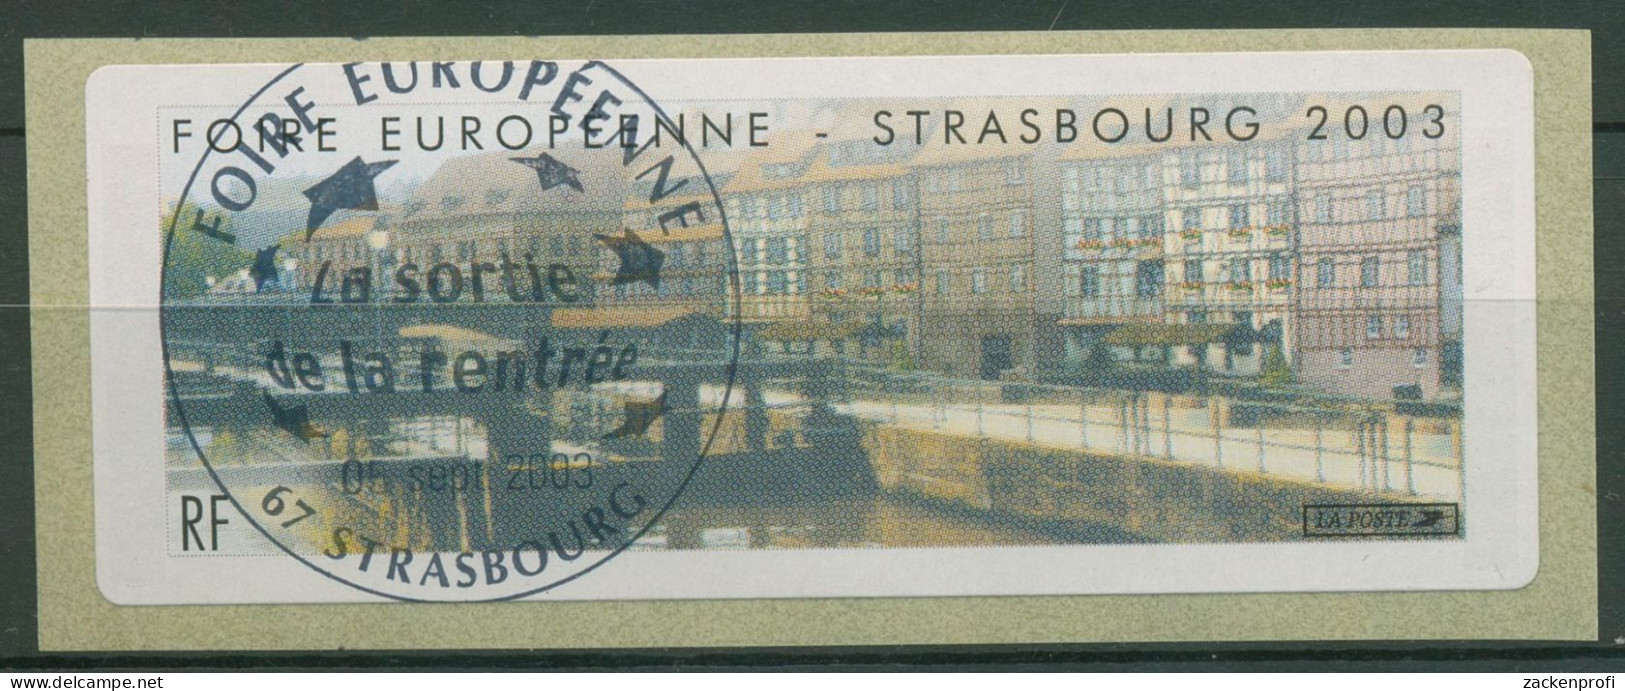 Frankreich 2003 Automatenmarken Europa-Messe Straßburg ATM 30 Gestempelt - 1999-2009 Abgebildete Automatenmarke